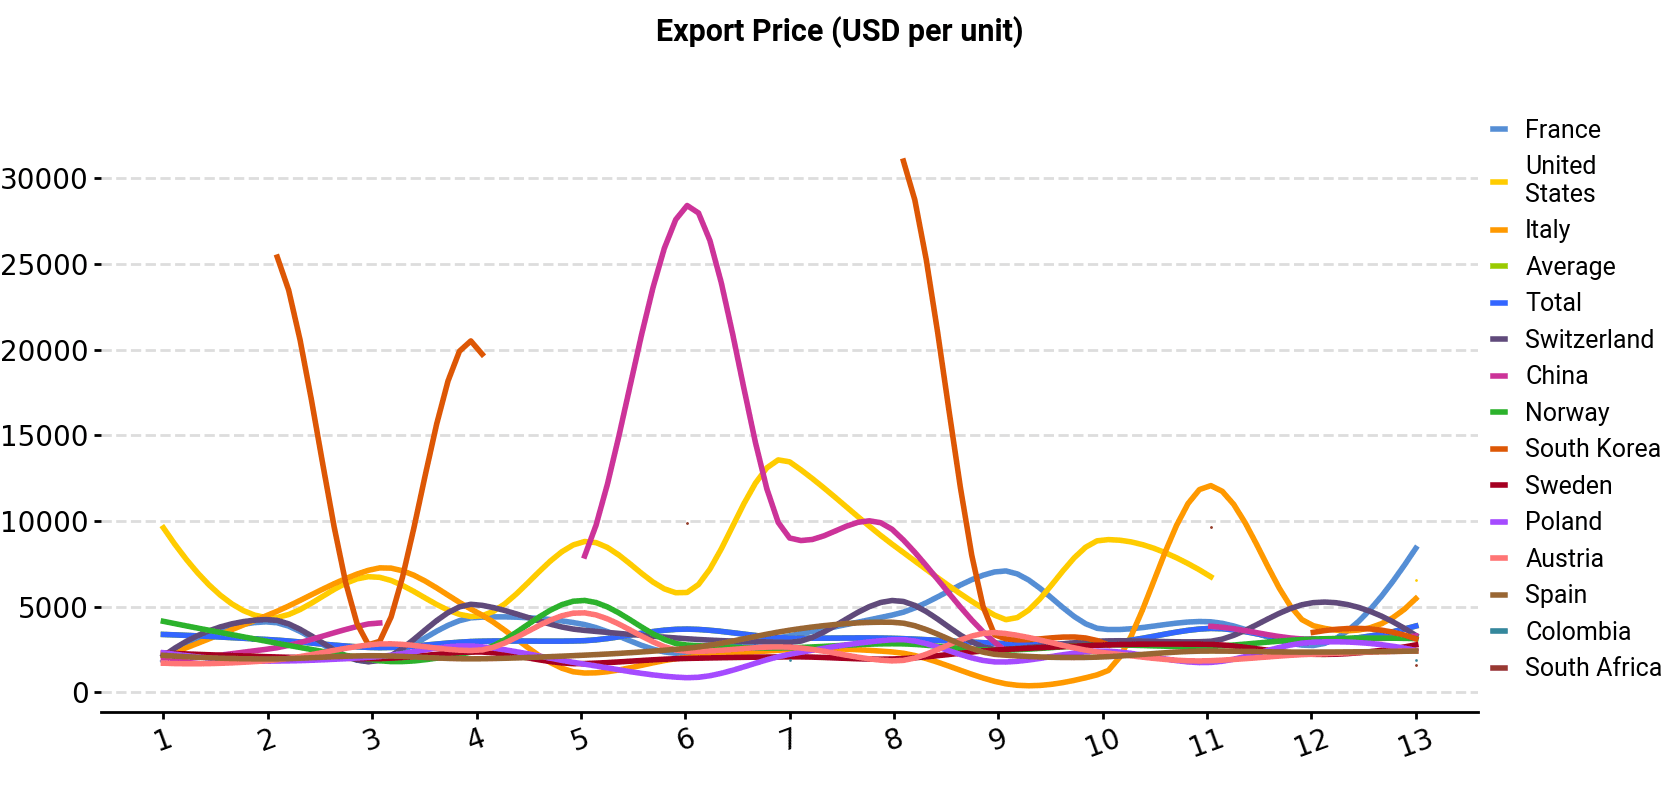 Export Price (USD per unit)